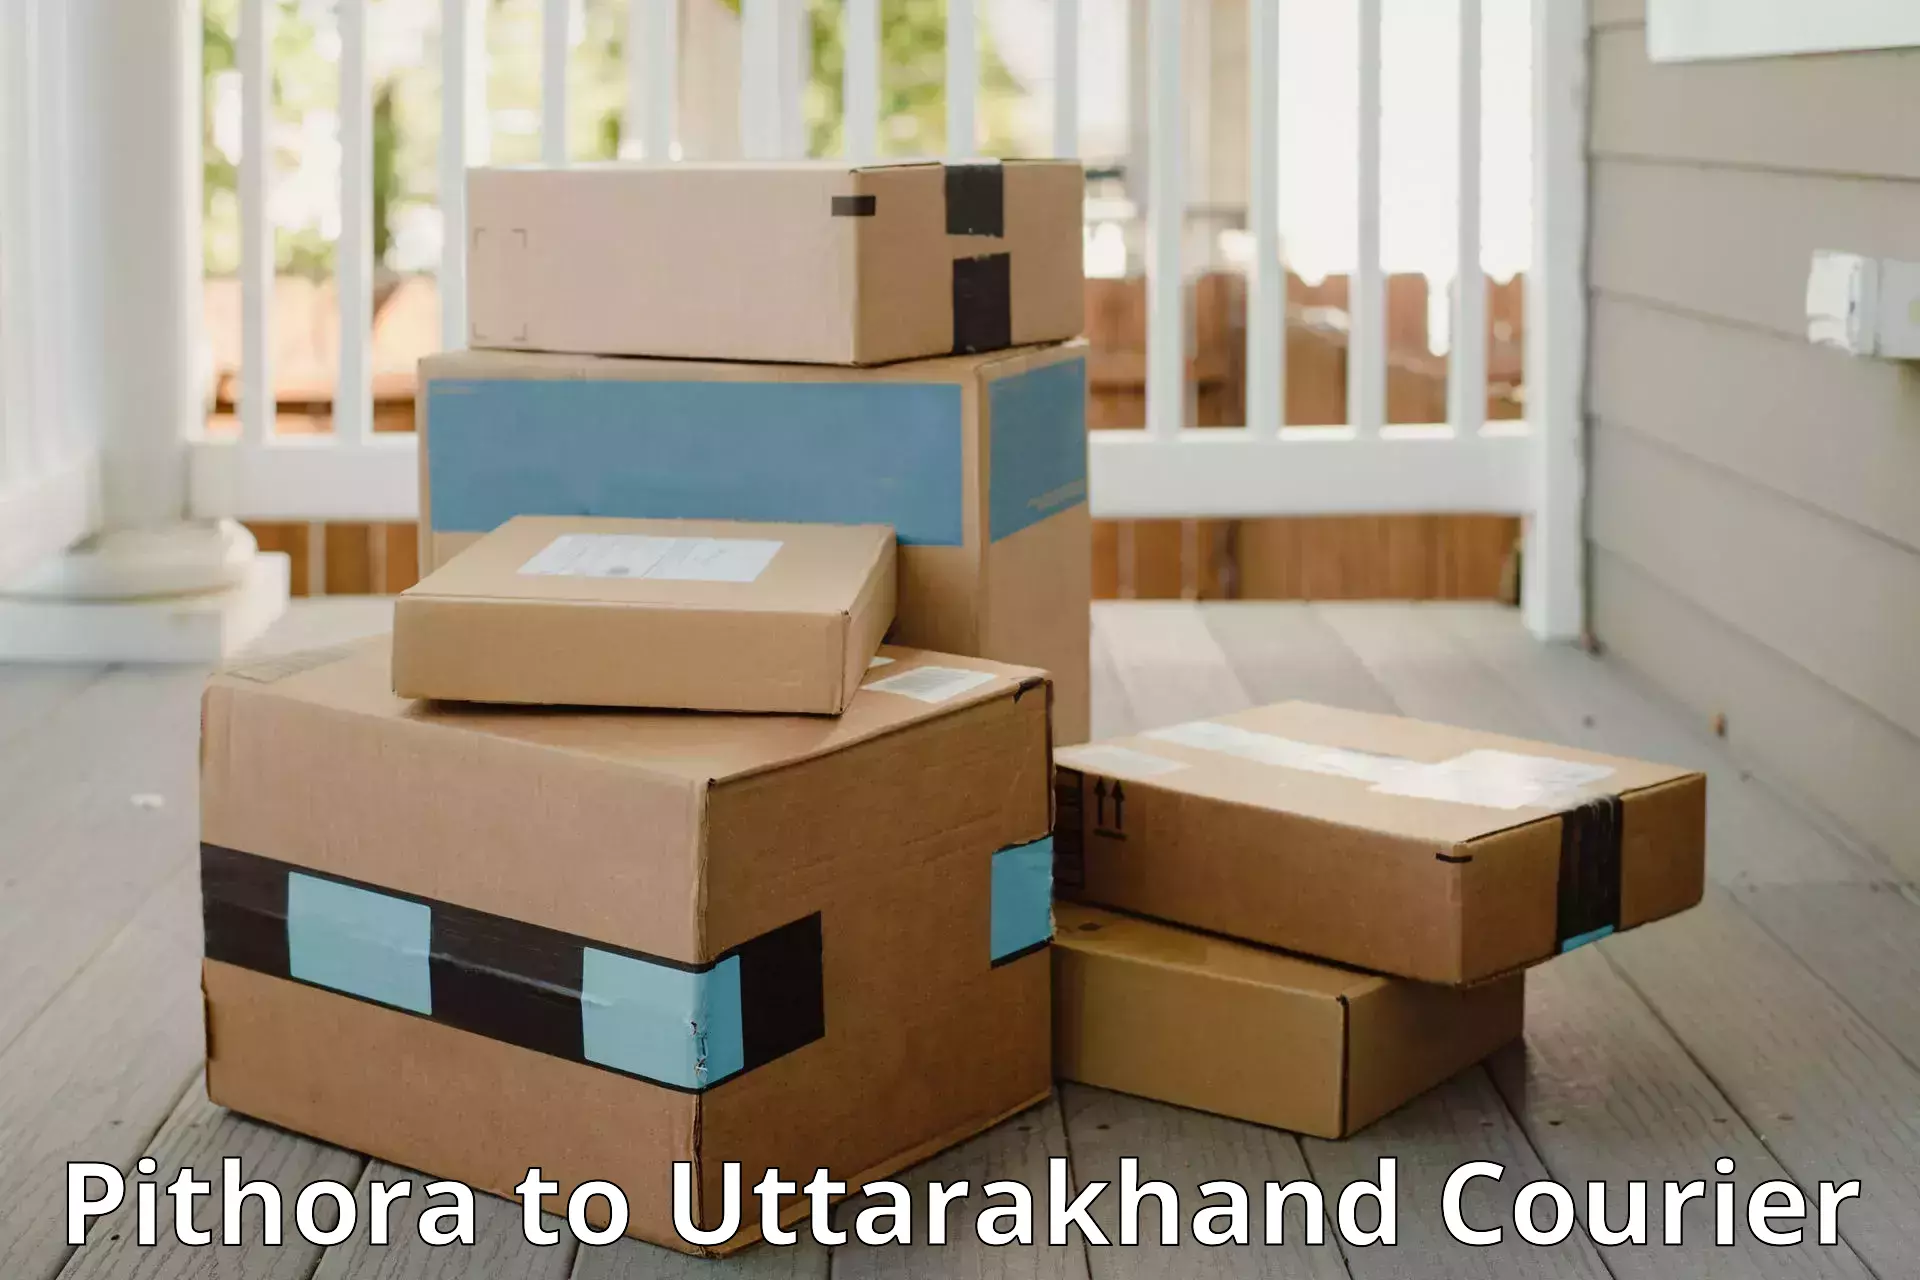 Baggage transport network Pithora to Uttarakhand